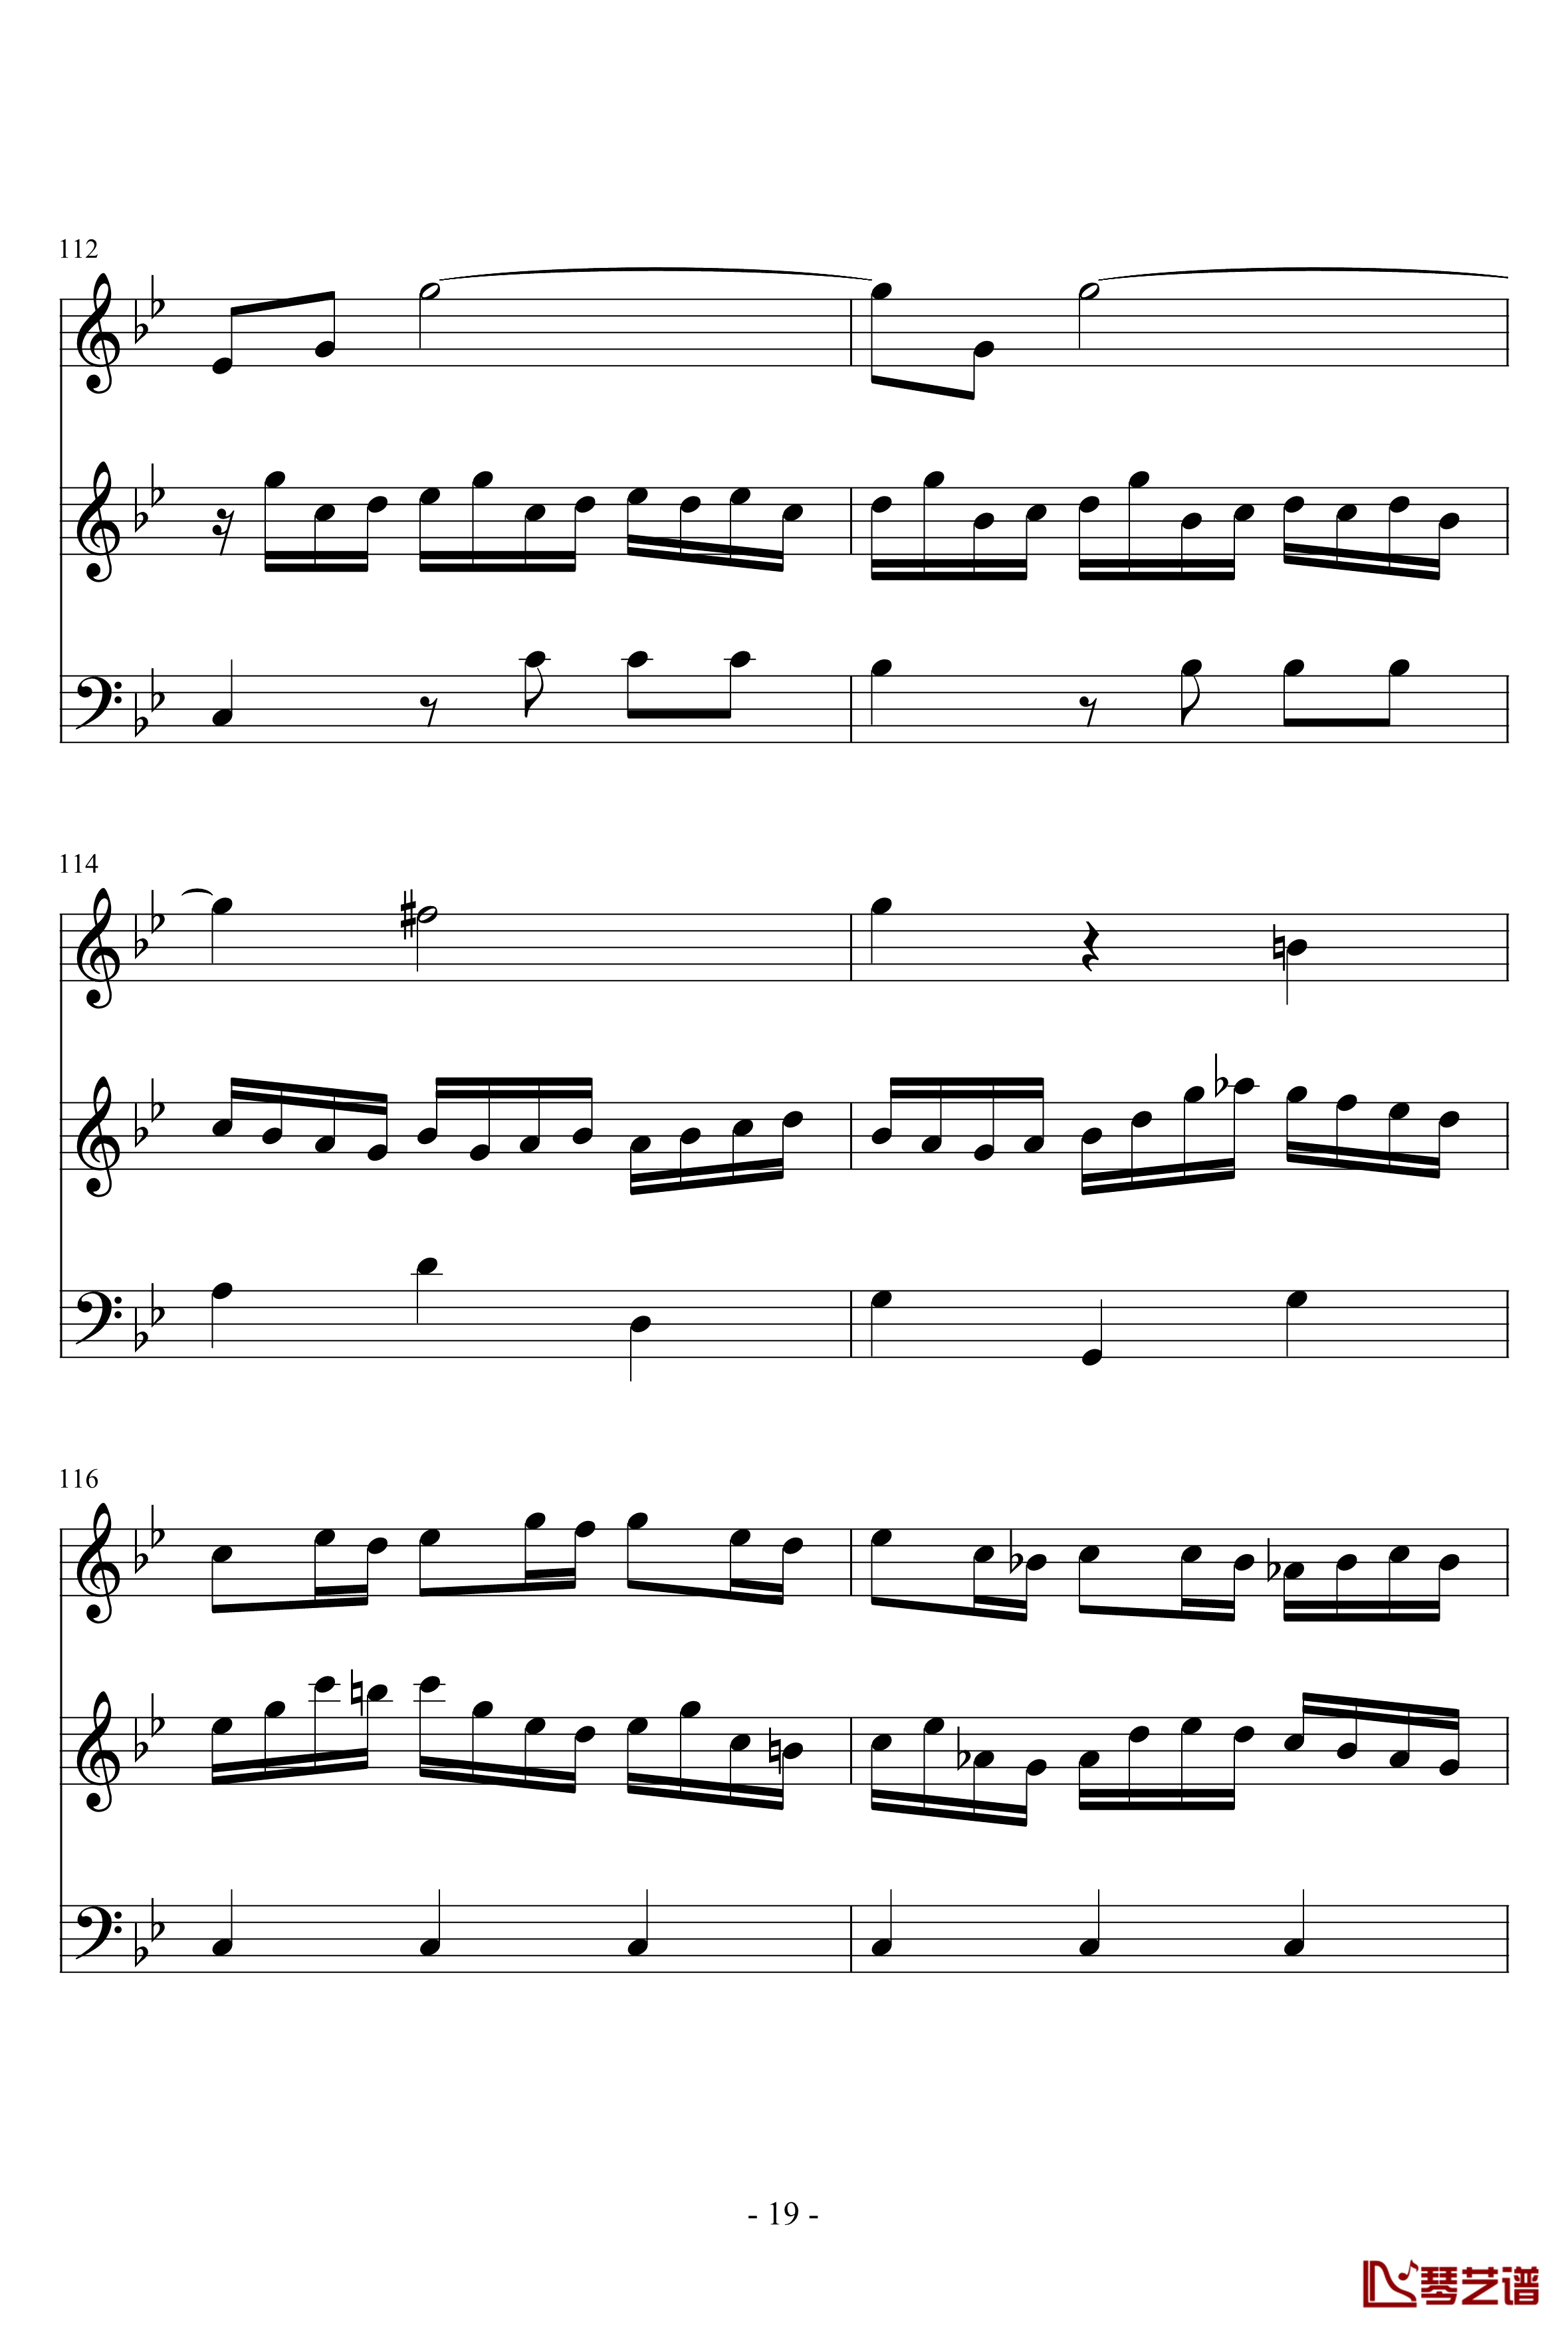 长笛与羽管键琴奏鸣曲第一乐章钢琴谱-巴赫-P.E.Bach19